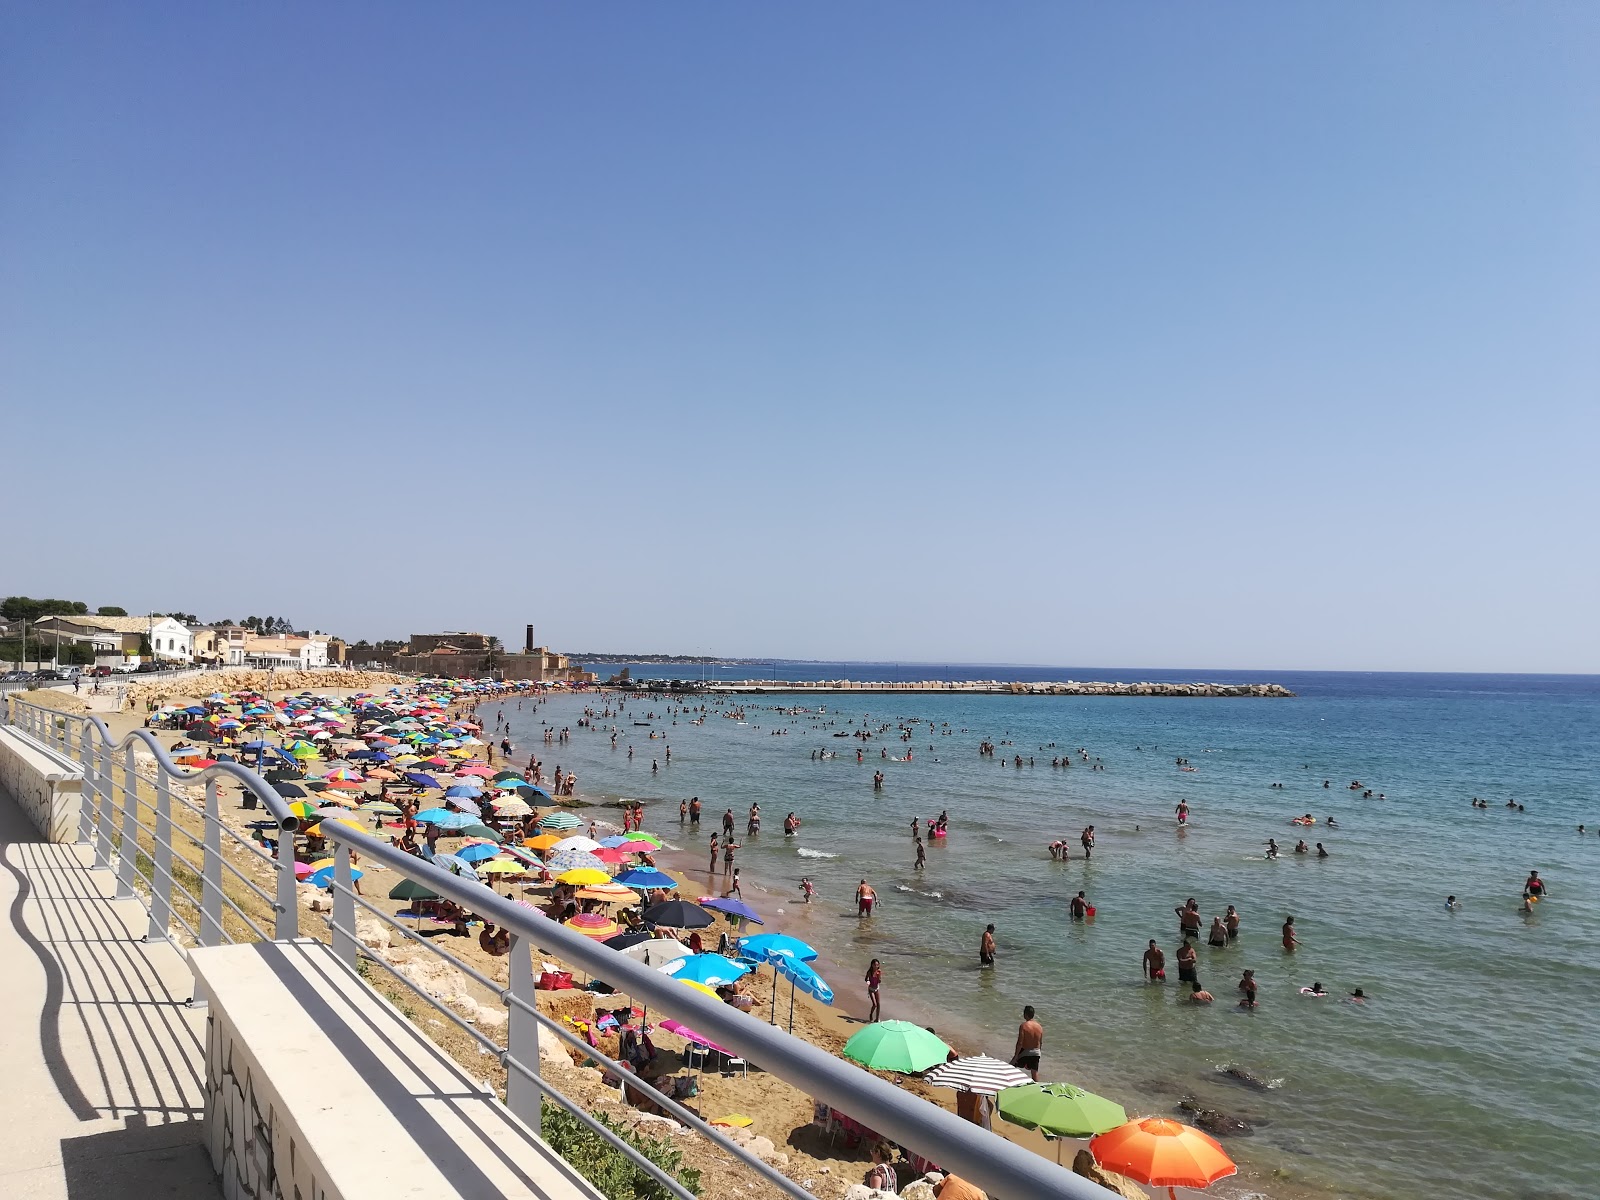 Foto af Spiaggia Di Avola - populært sted blandt afslapningskendere